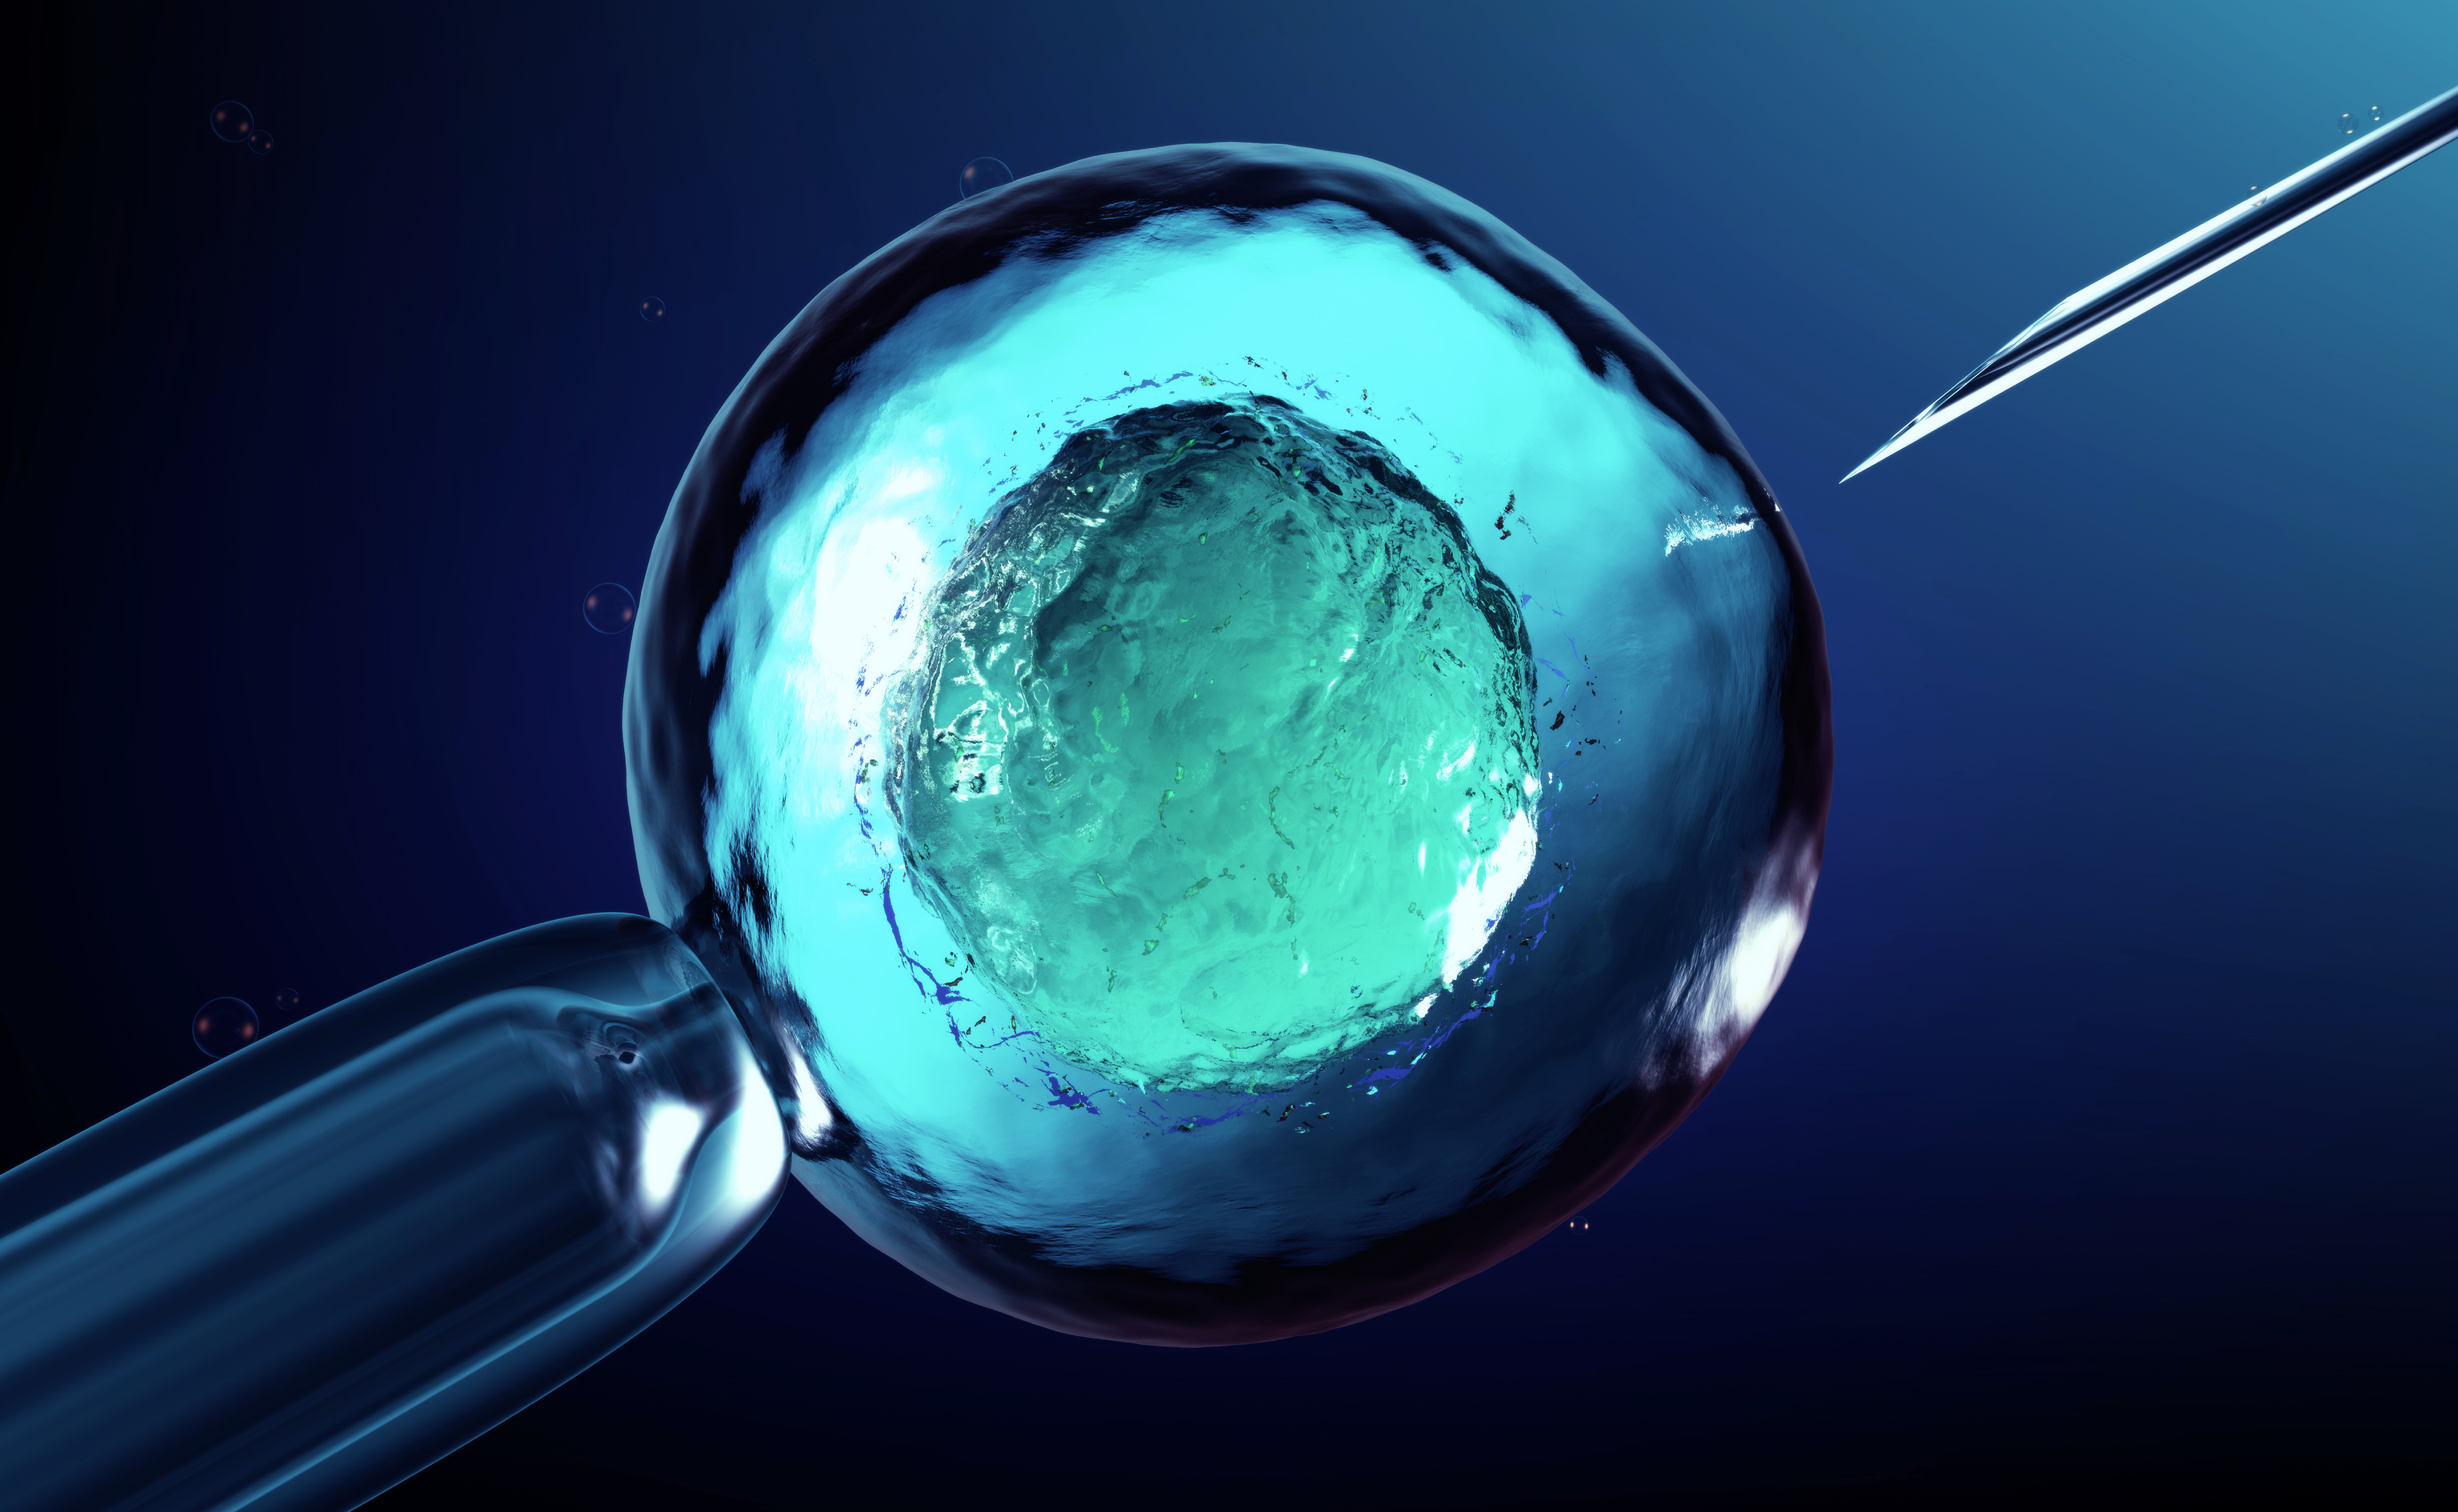 Clula embrionaria que est siendo manipulada cientficamente realizada en 3D artificialmente.